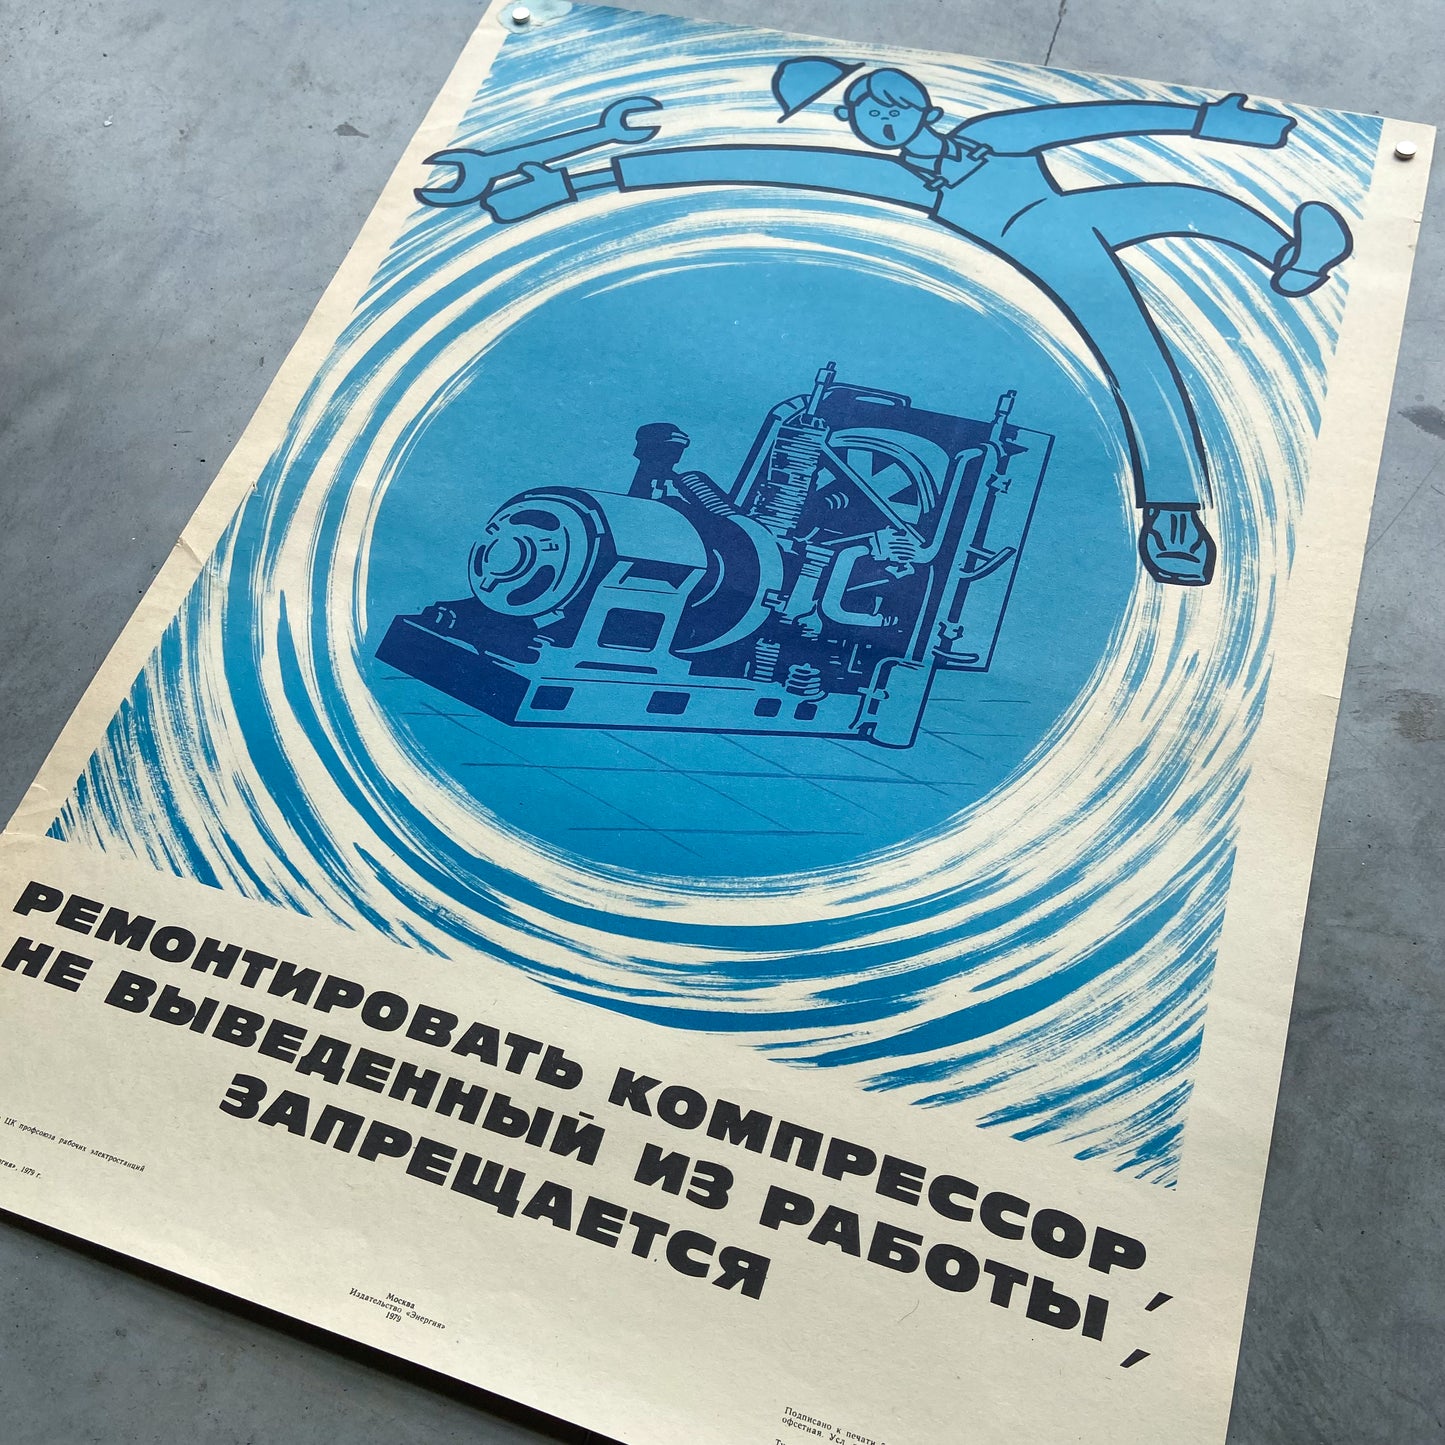 1979 Soviet Work Safety Poster #P1160 - 17" x 23"